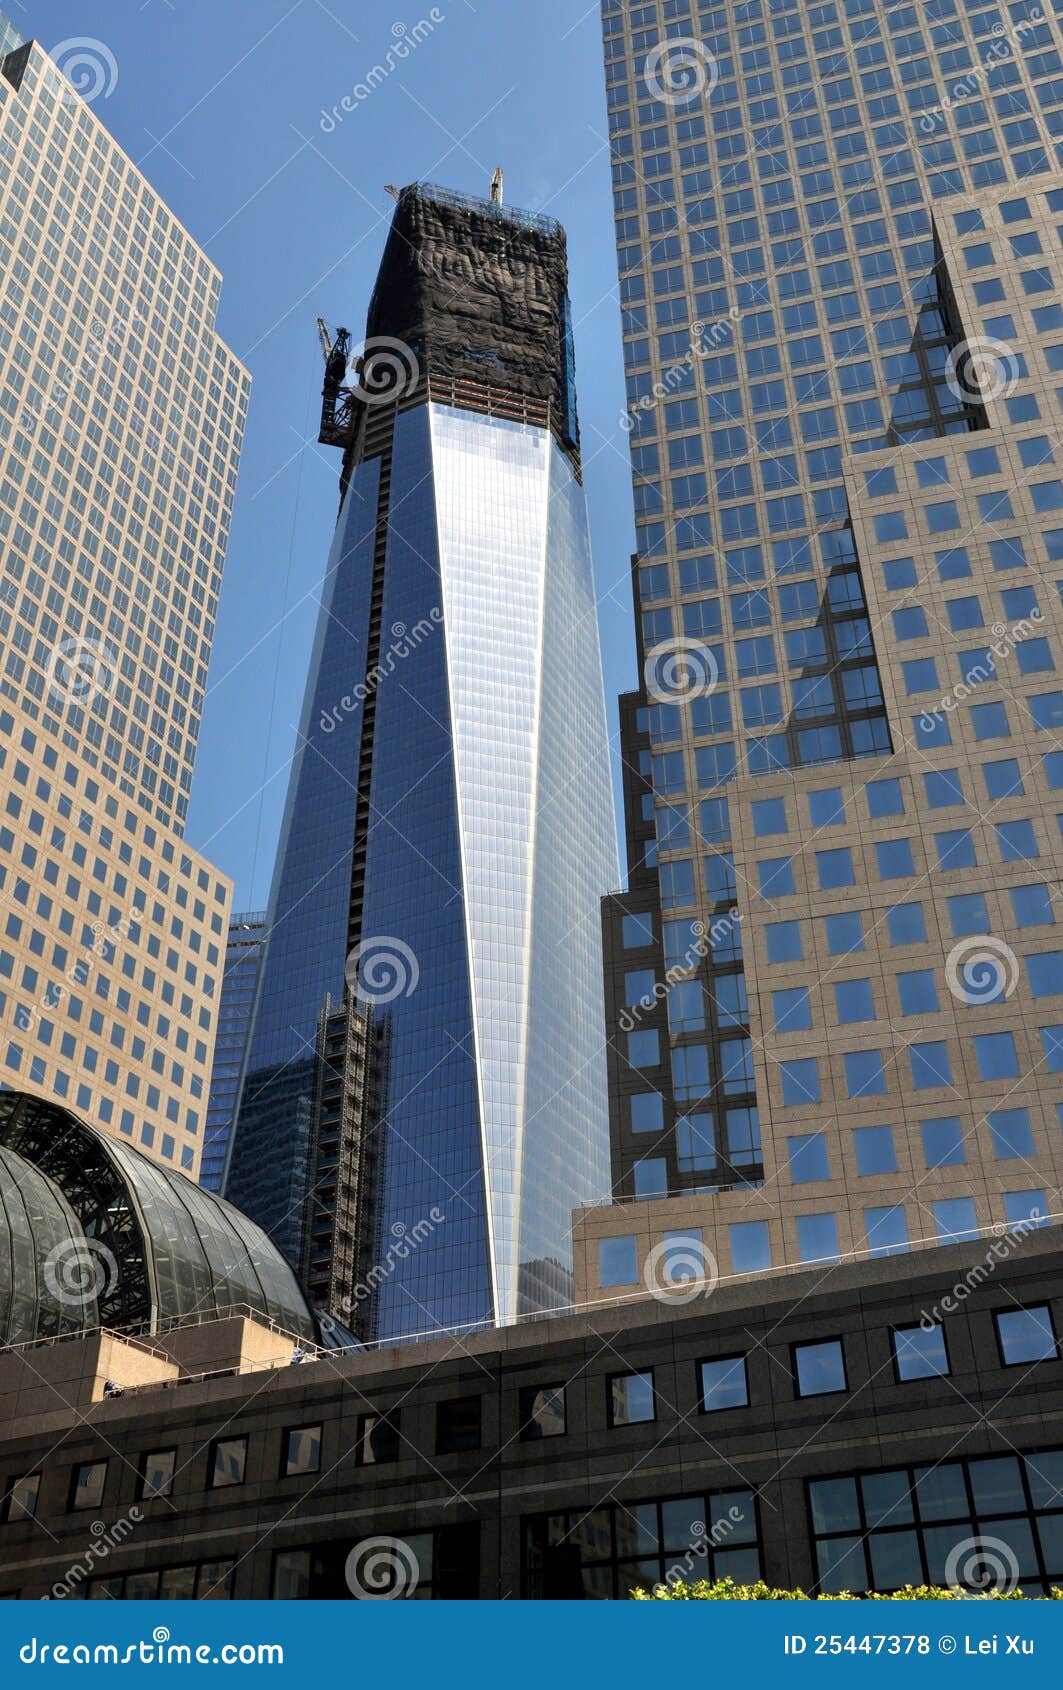 NYC: Uma torre do World Trade Center. Um World Trade Center (a torre da liberdade) como ela aproxima a conclusão vista entre as torres do centro financeiro de mundo no ponto zero em New York City.